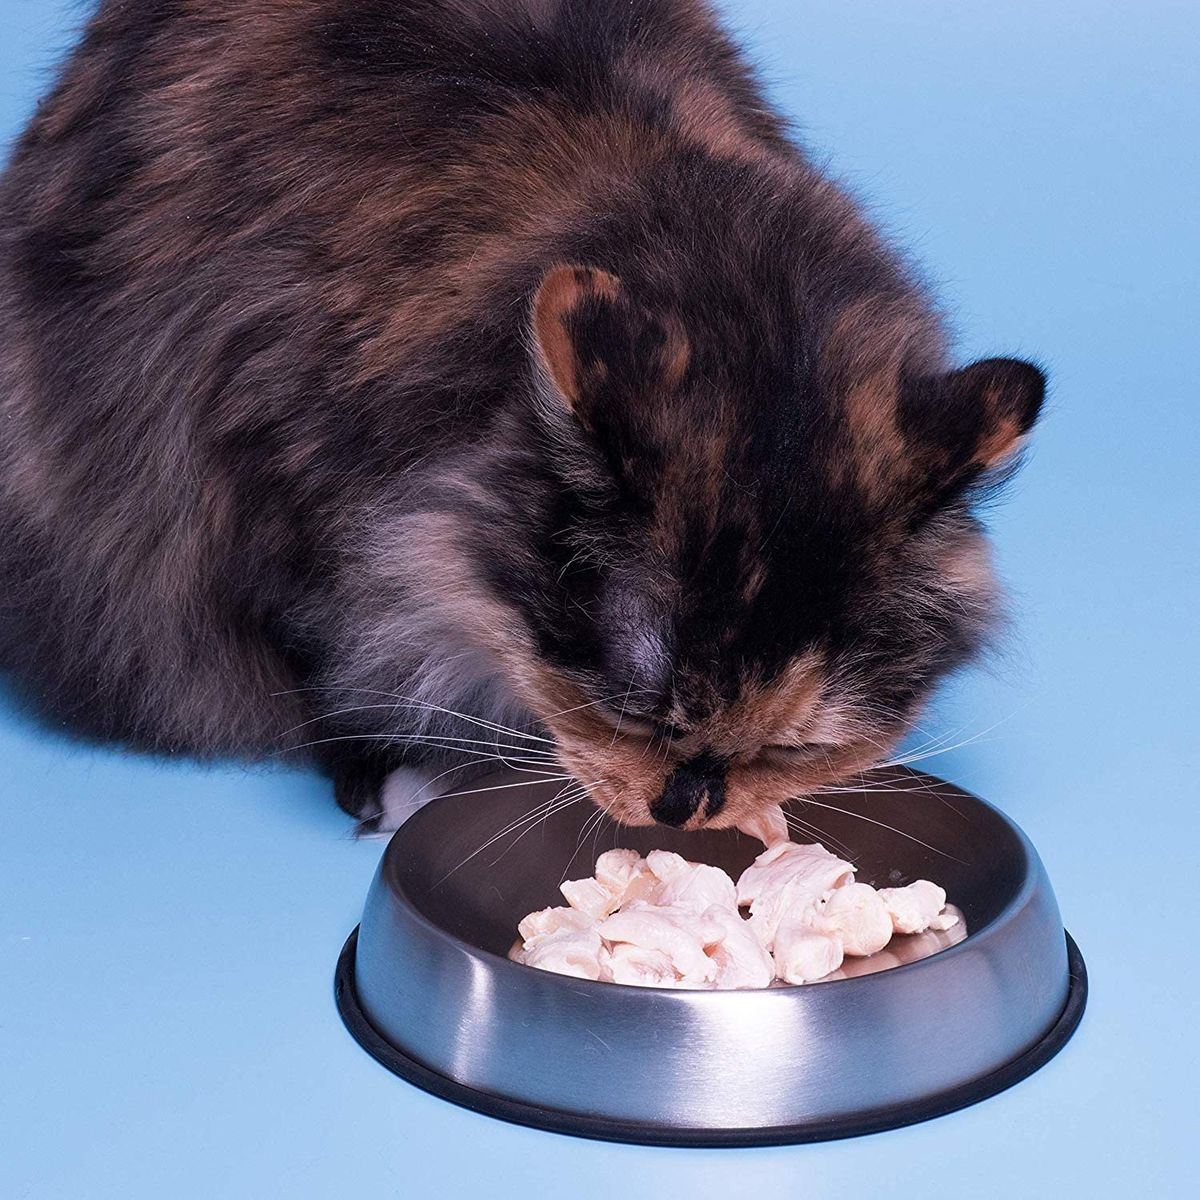 5 najboljih zdjela za hranu za mačke, prema mišljenju veterinara